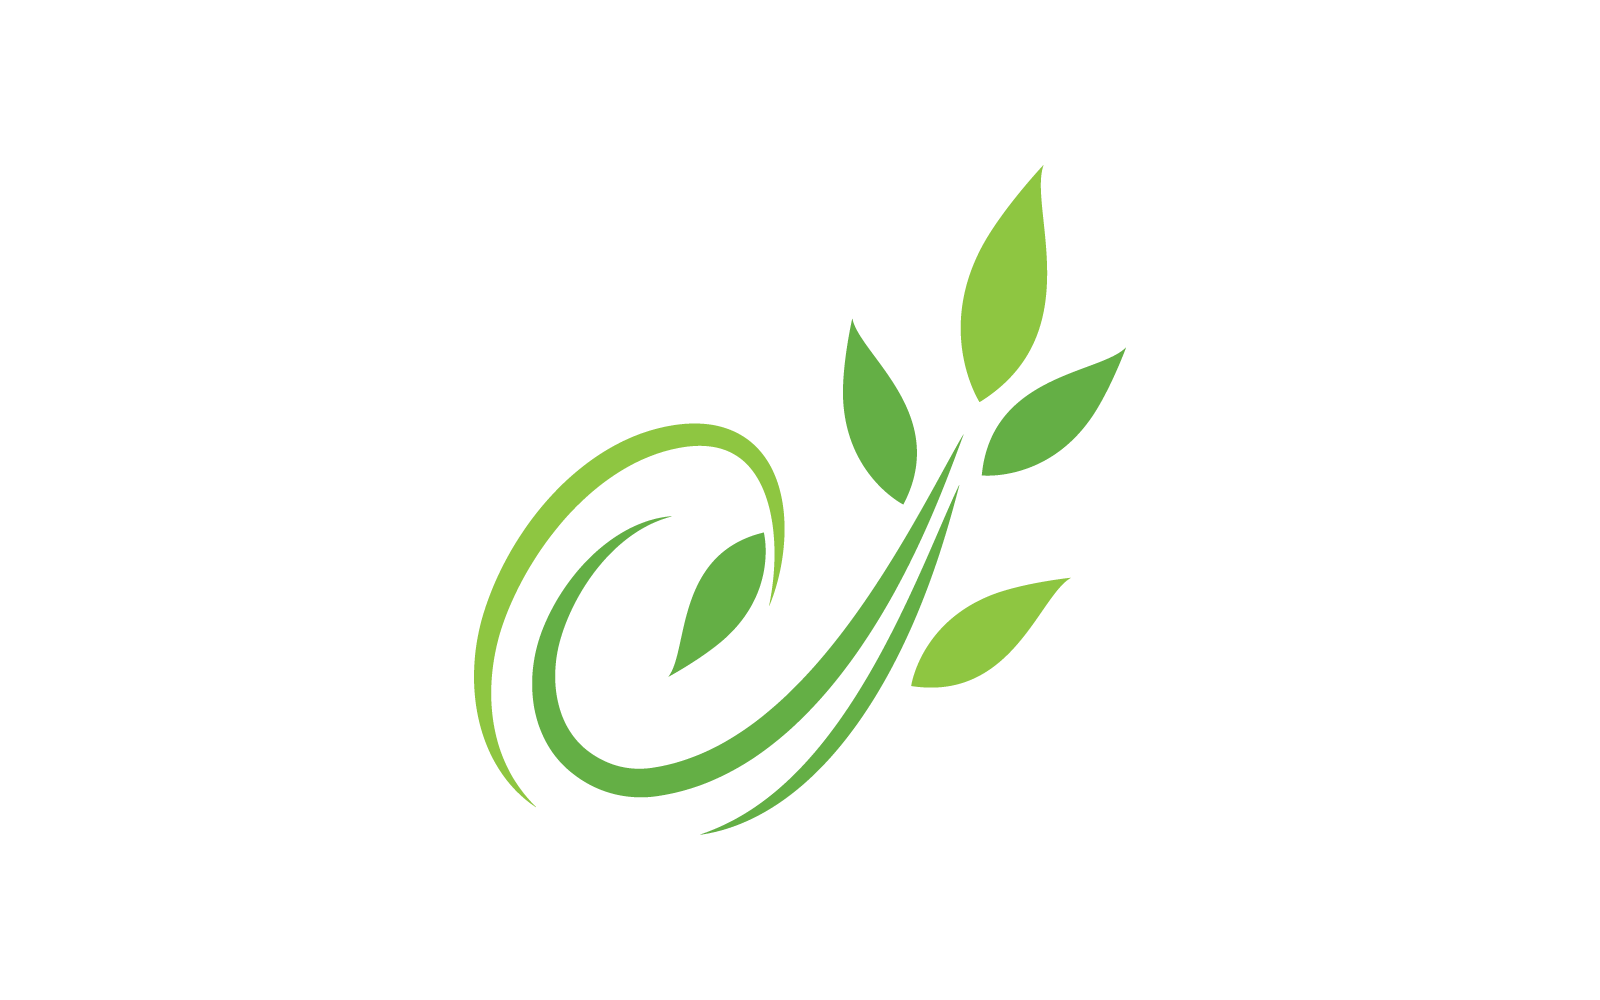 Eco green leaf illustration design template Logo Template